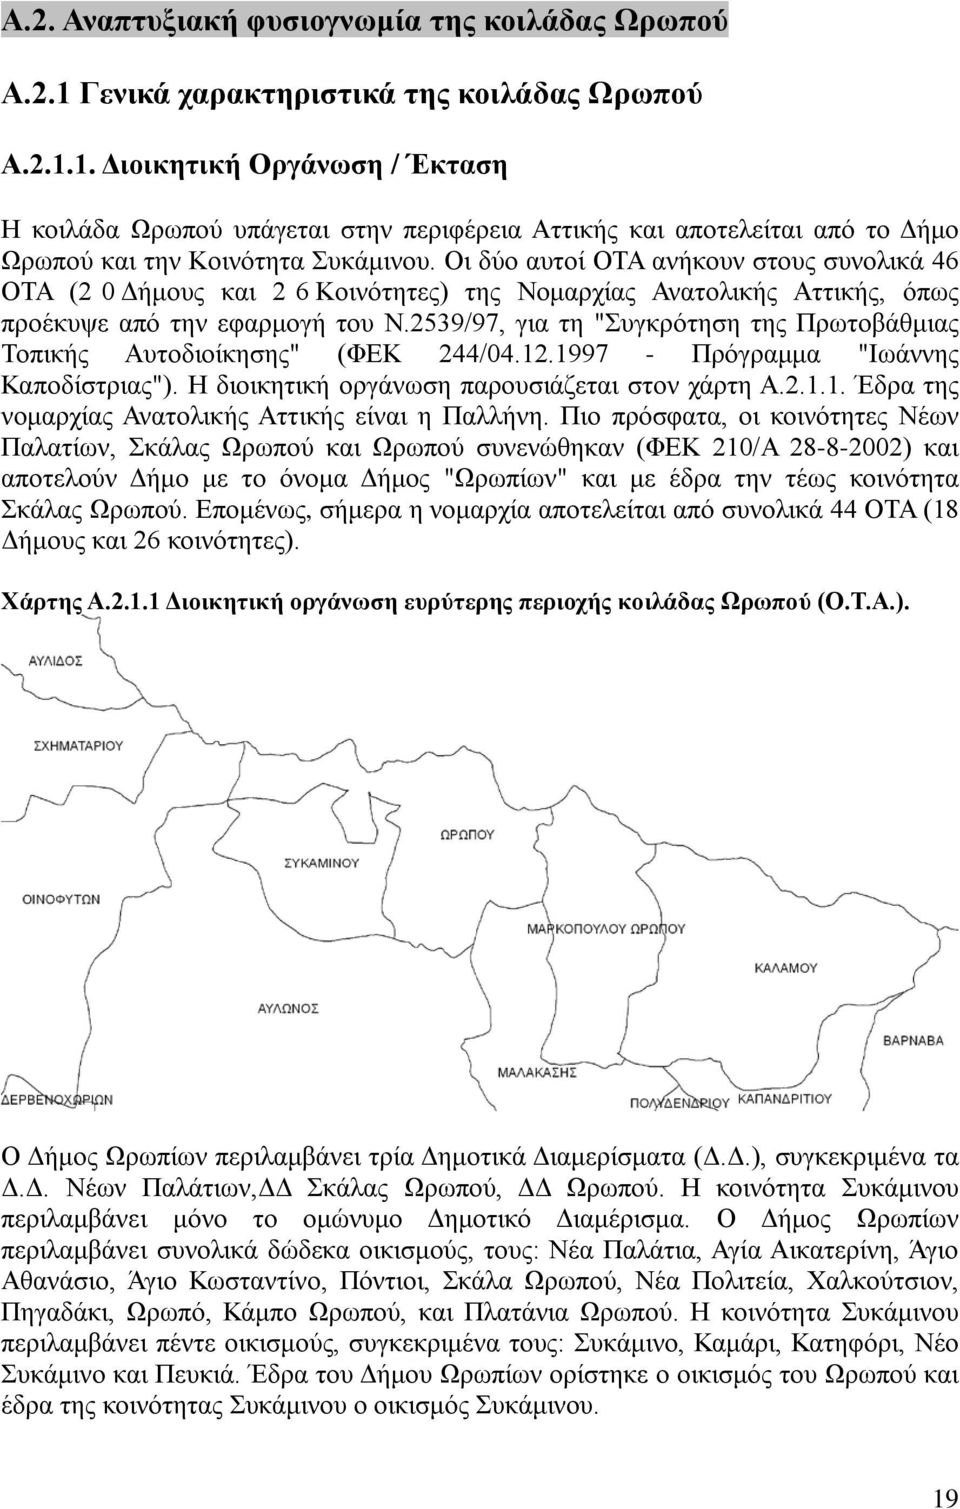 2539/97, για τη "Συγκρότηση της Πρωτοβάθμιας Τοπικής Αυτοδιοίκησης" (ΦΕΚ 244/04.12.1997 - Πρόγραμμα "Ιωάννης Καποδίστριας"). Η διοικητική οργάνωση παρουσιάζεται στον χάρτη Α.2.1.1. Έδρα της νομαρχίας Ανατολικής Αττικής είναι η Παλλήνη.